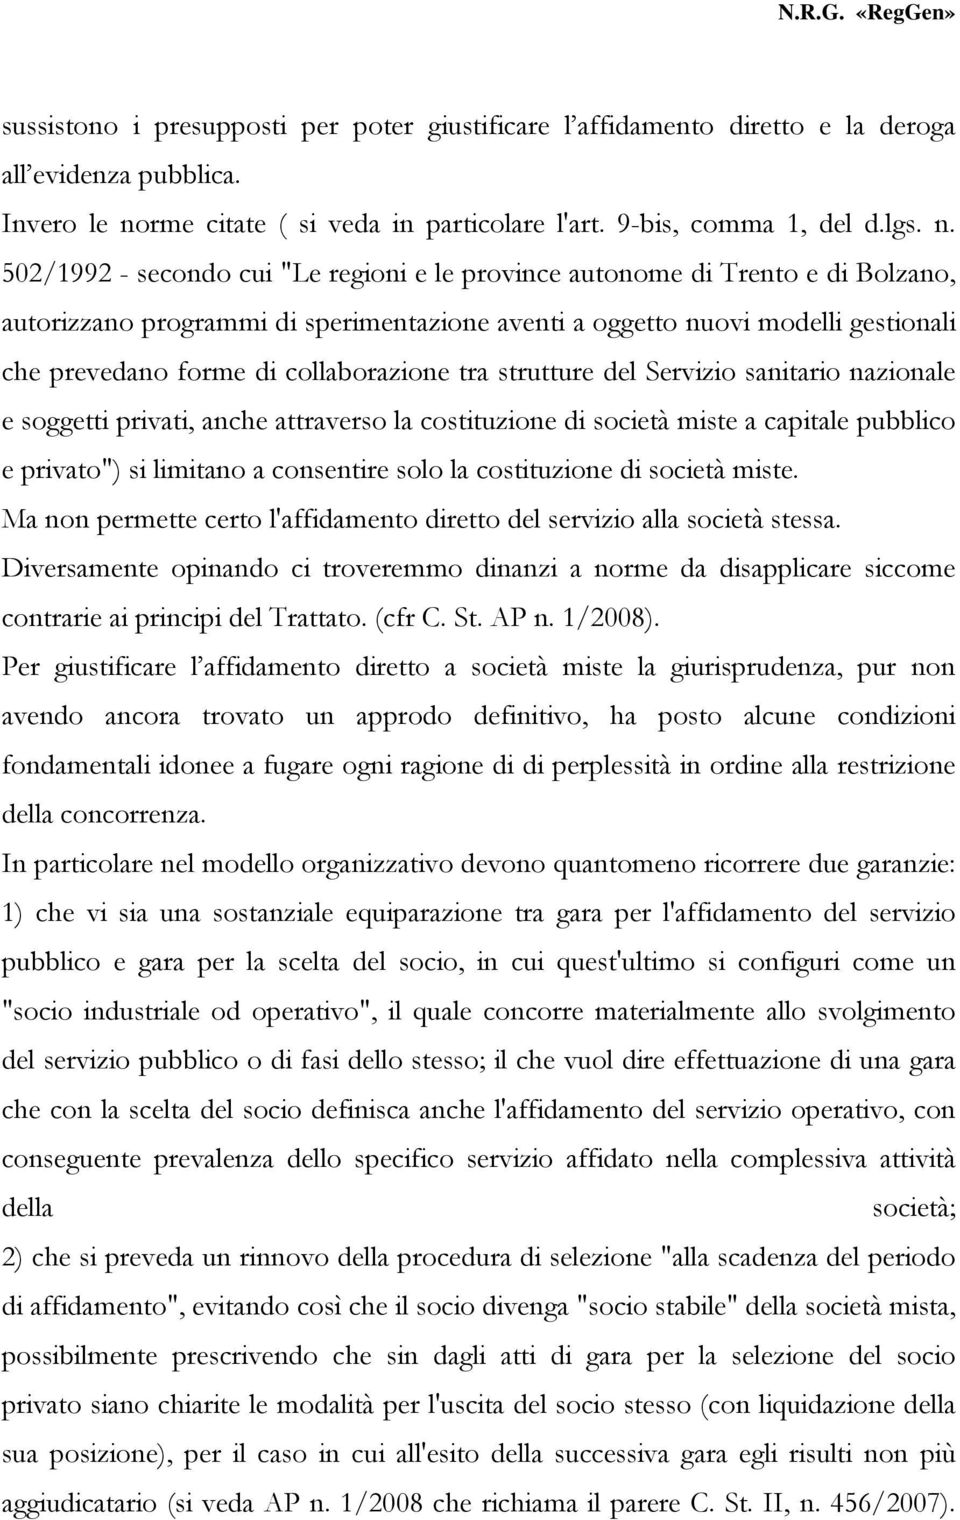 502/1992 - secondo cui "Le regioni e le province autonome di Trento e di Bolzano, autorizzano programmi di sperimentazione aventi a oggetto nuovi modelli gestionali che prevedano forme di